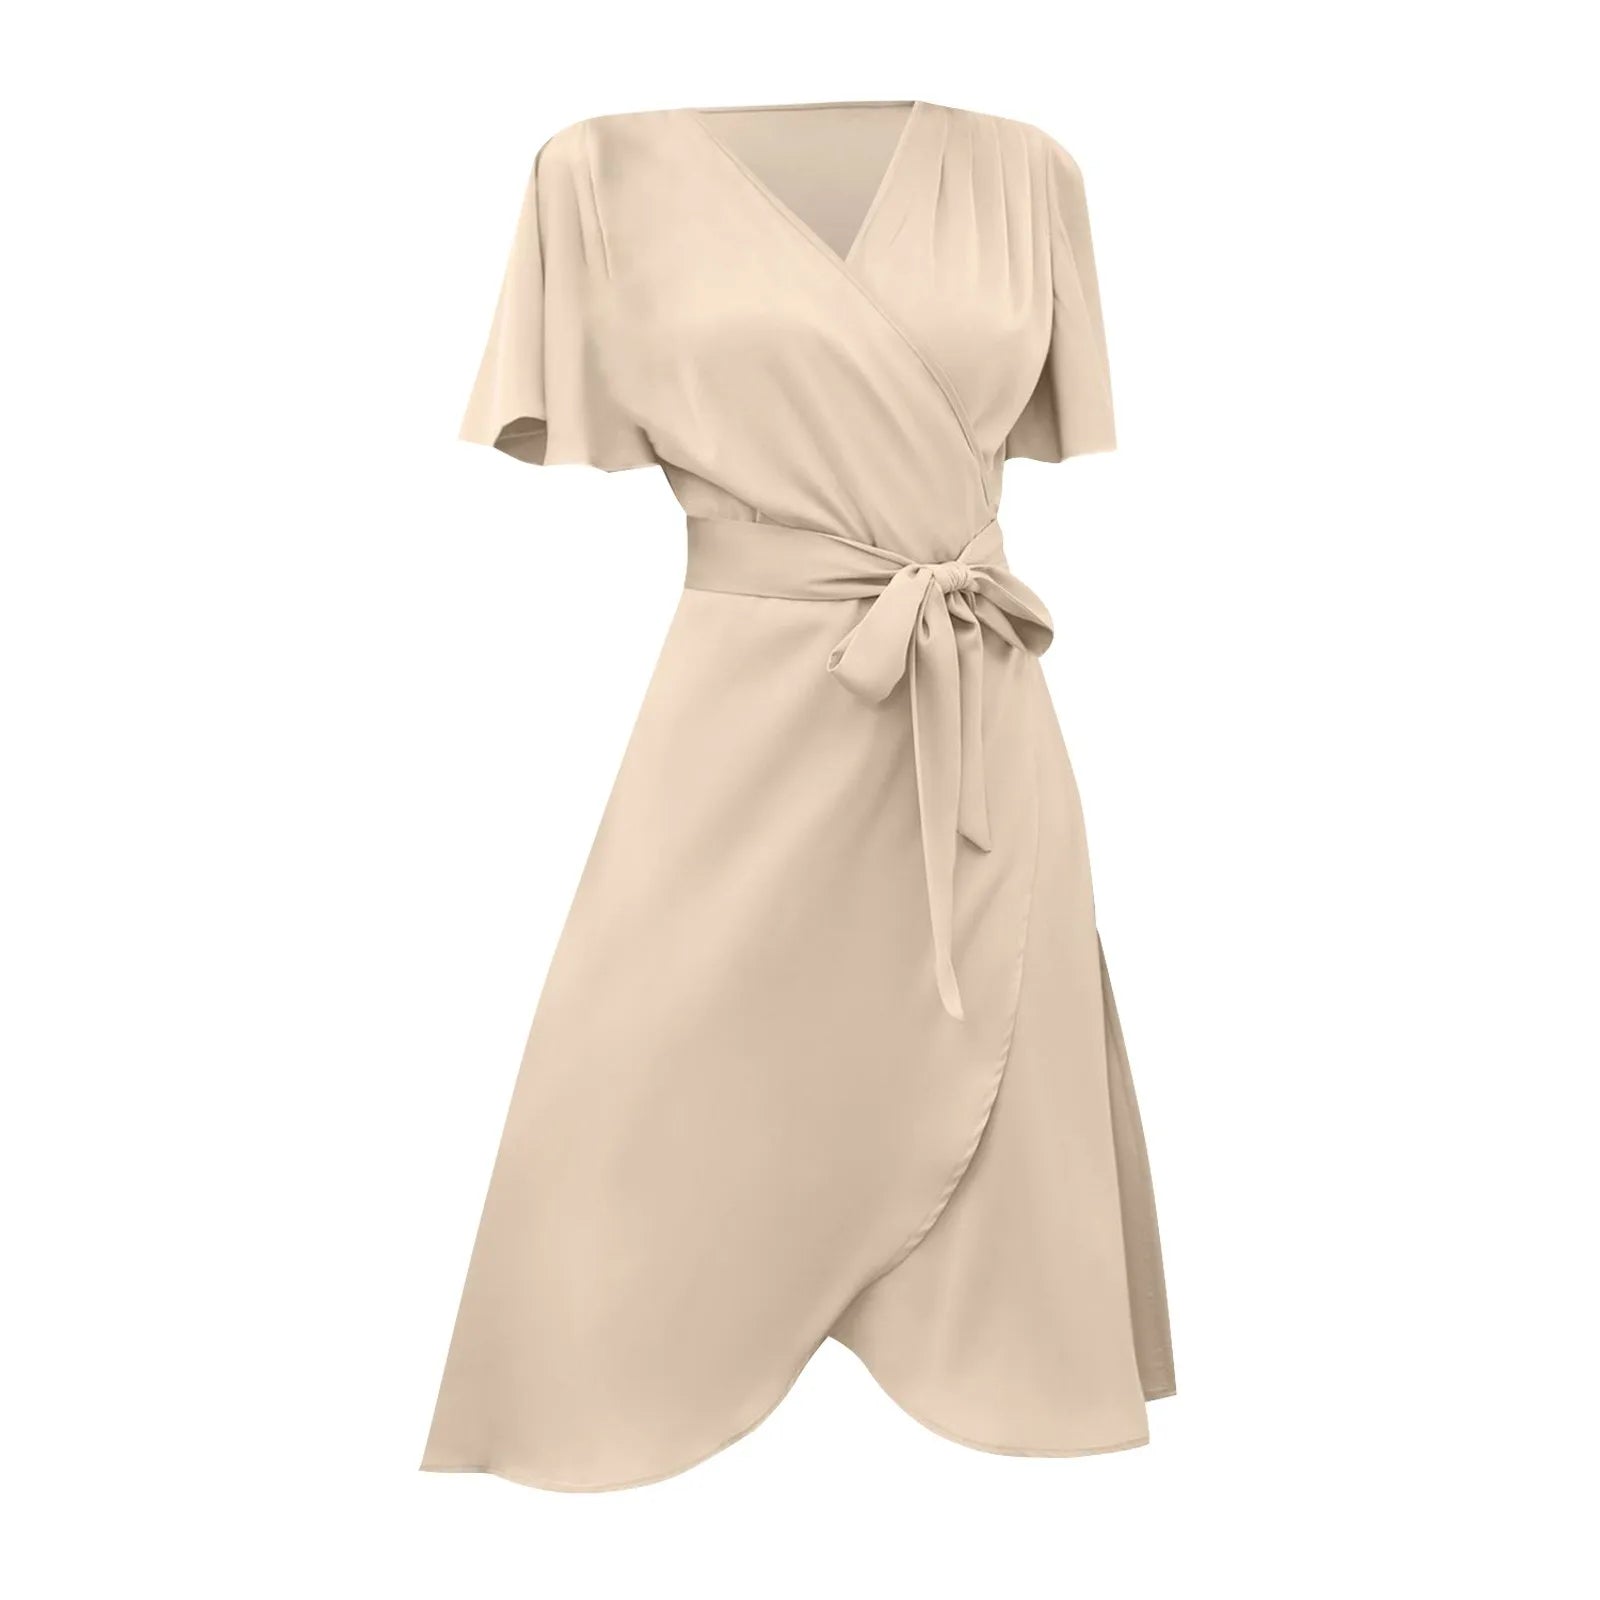 Elegant Bell Sleeve Summer Dresses For Women- ARCHE